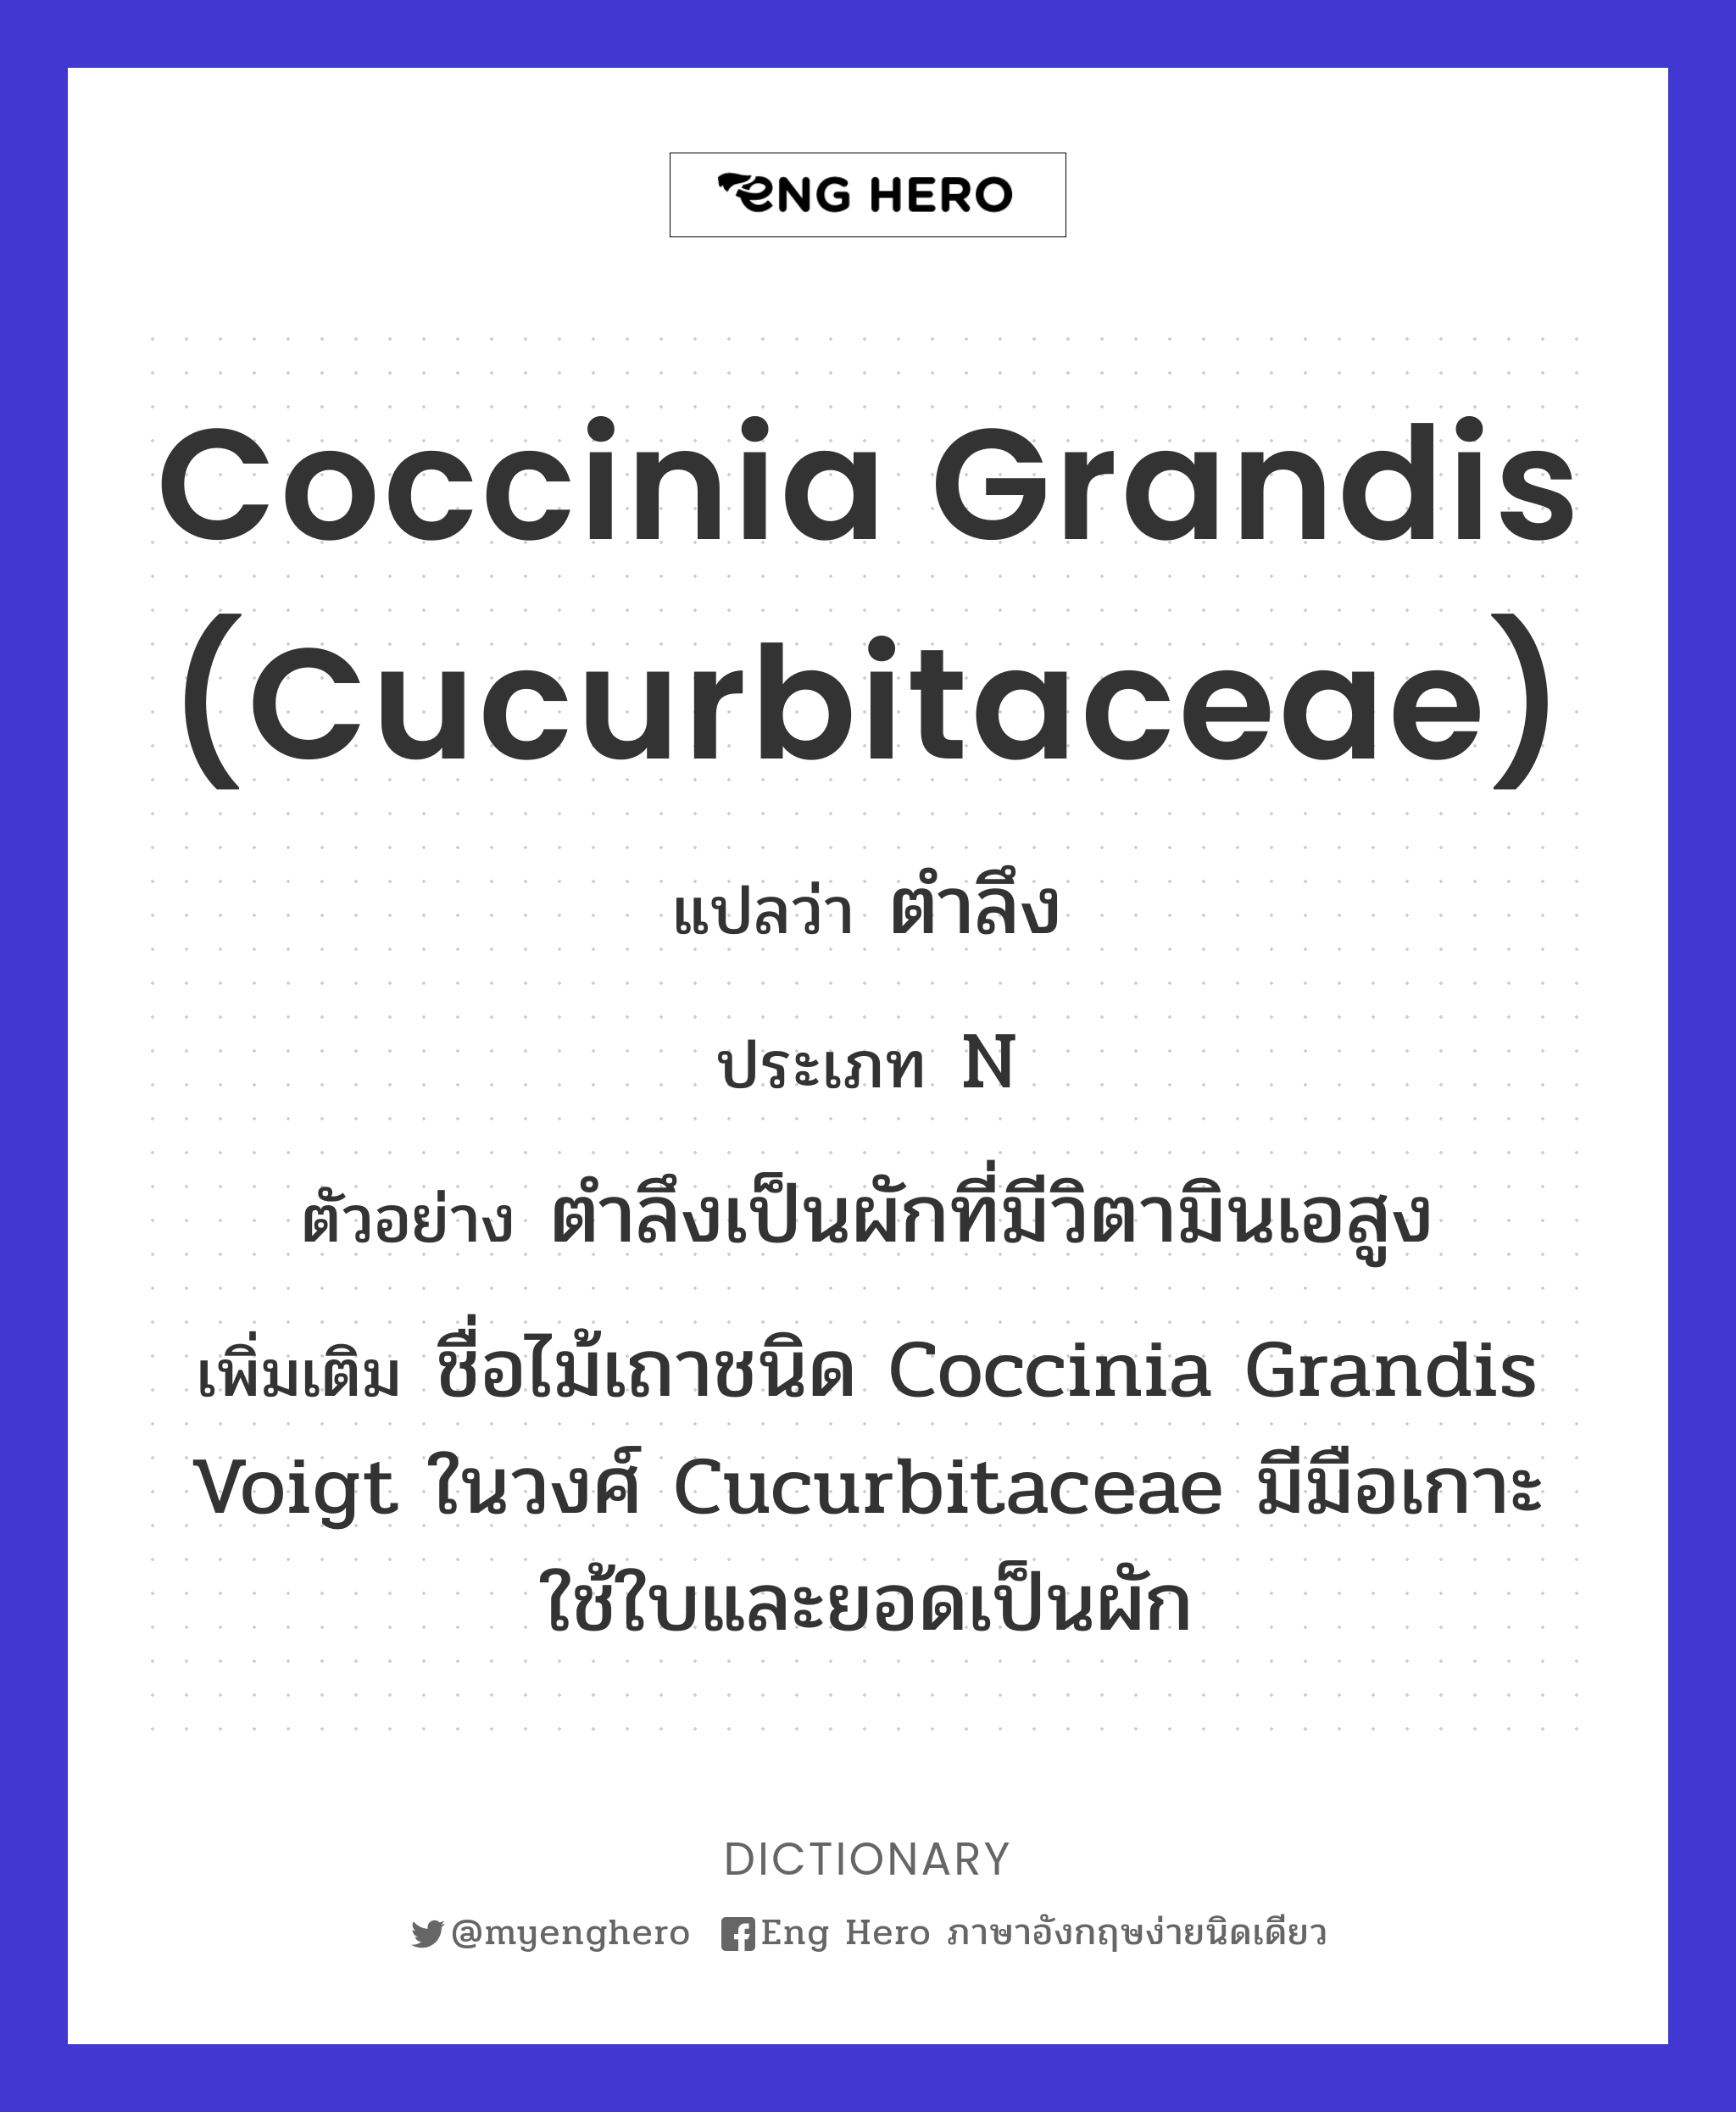 Coccinia grandis (Cucurbitaceae)